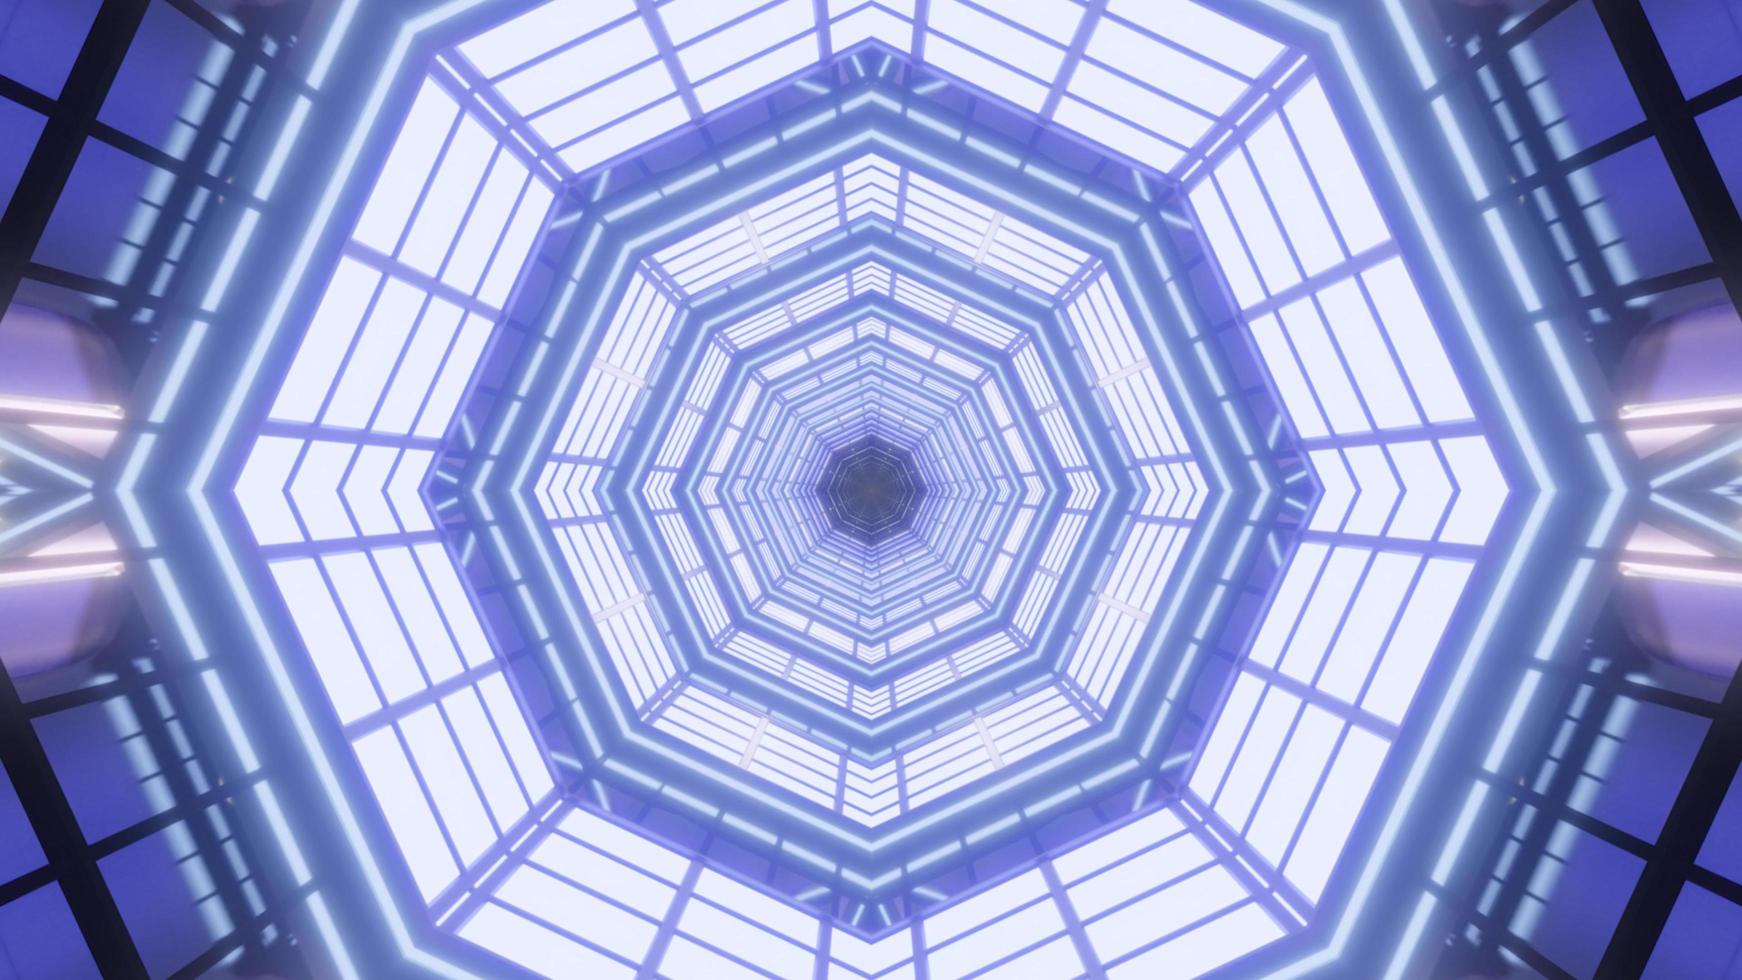 disegno del caleidoscopio dell'illustrazione 3d blu, viola e bianco per fondo o carta da parati foto